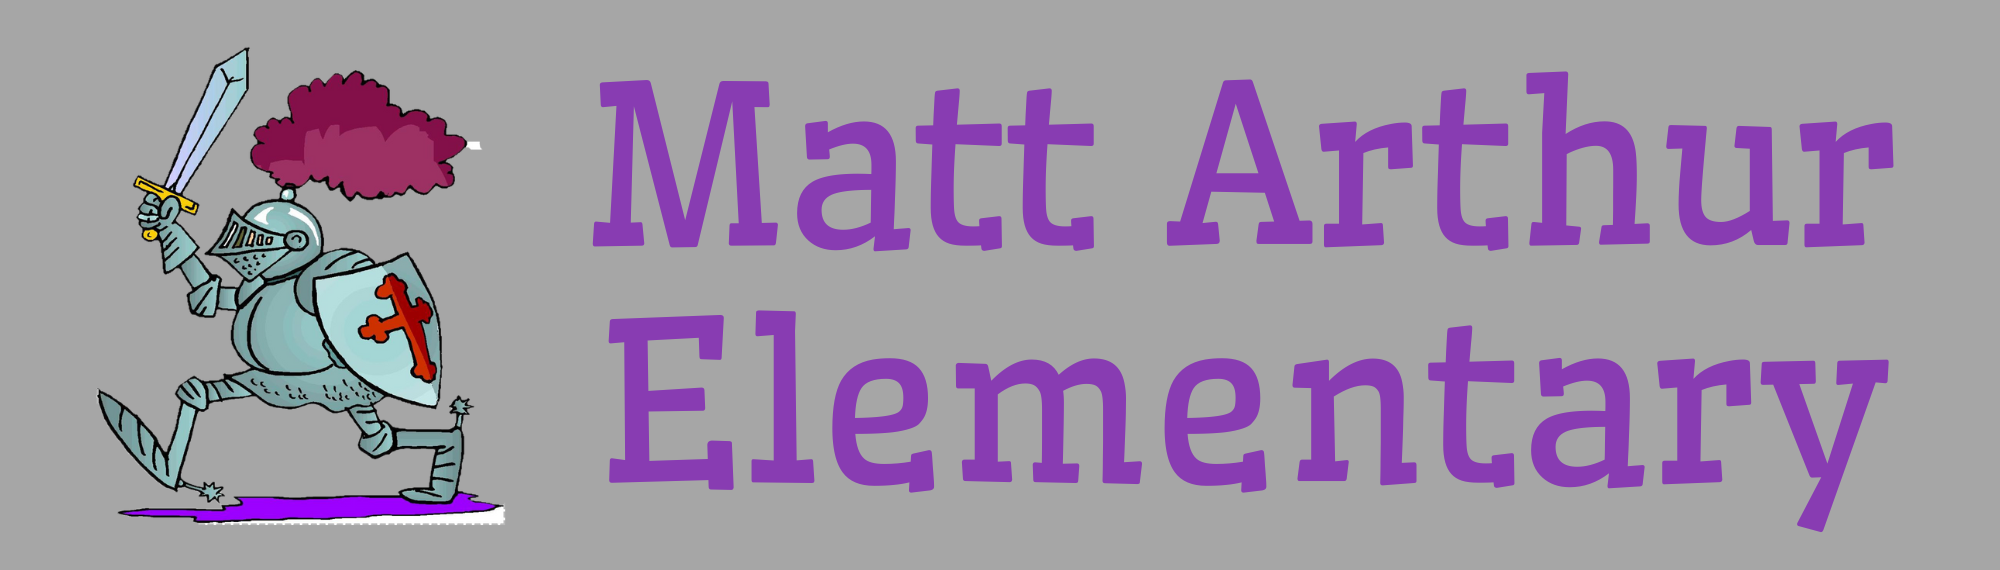 Matt Arthur Elementary School